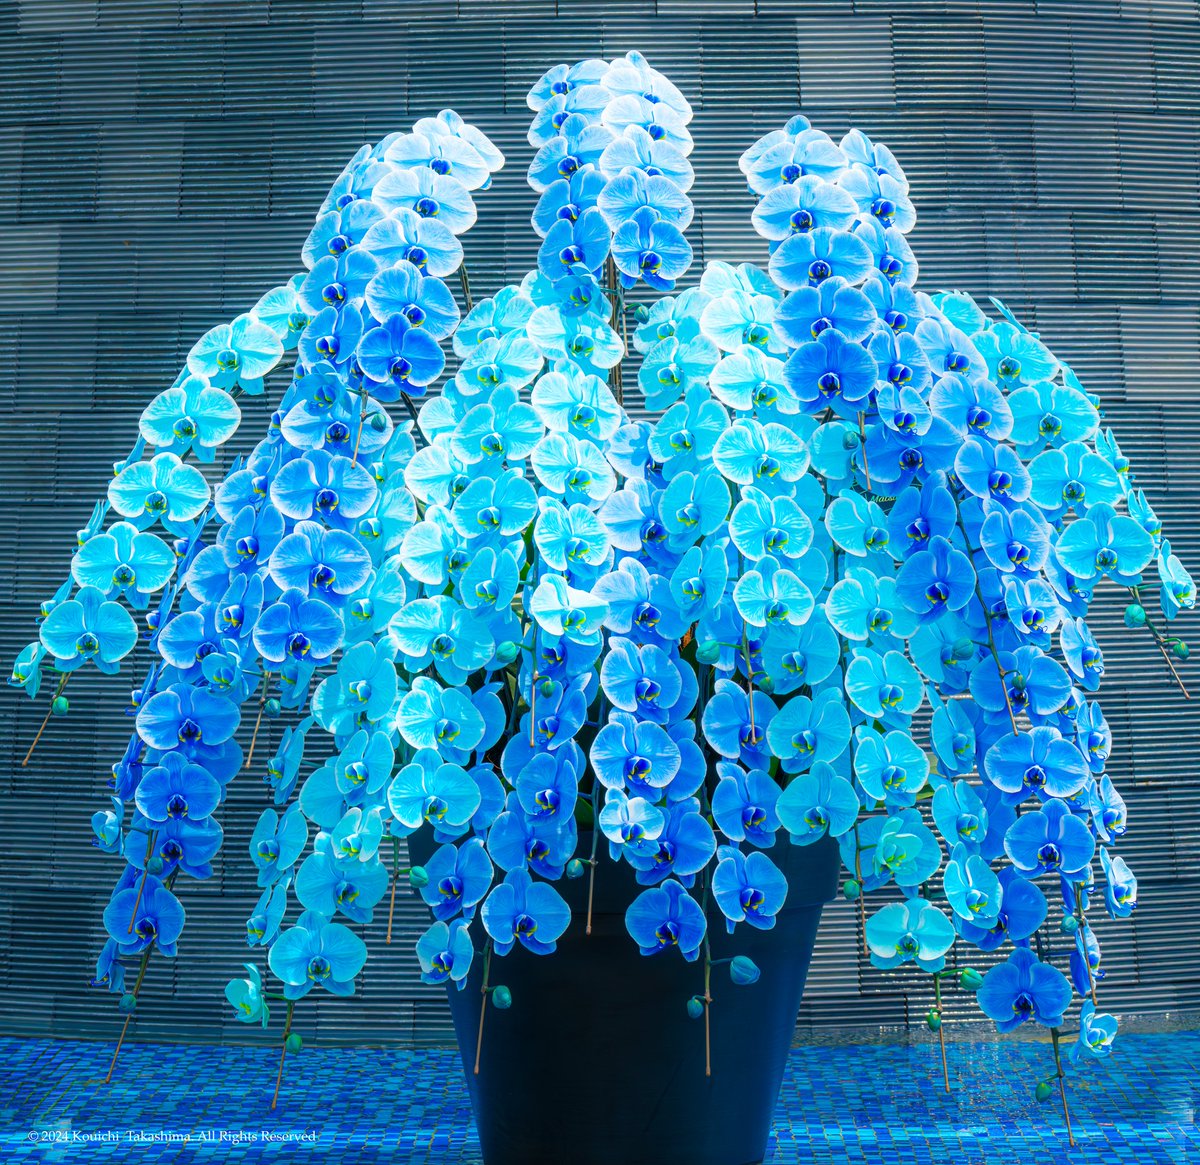 魔性の魅力を感じる青い胡蝶蘭✨
#NaturePhotography  #Flowers